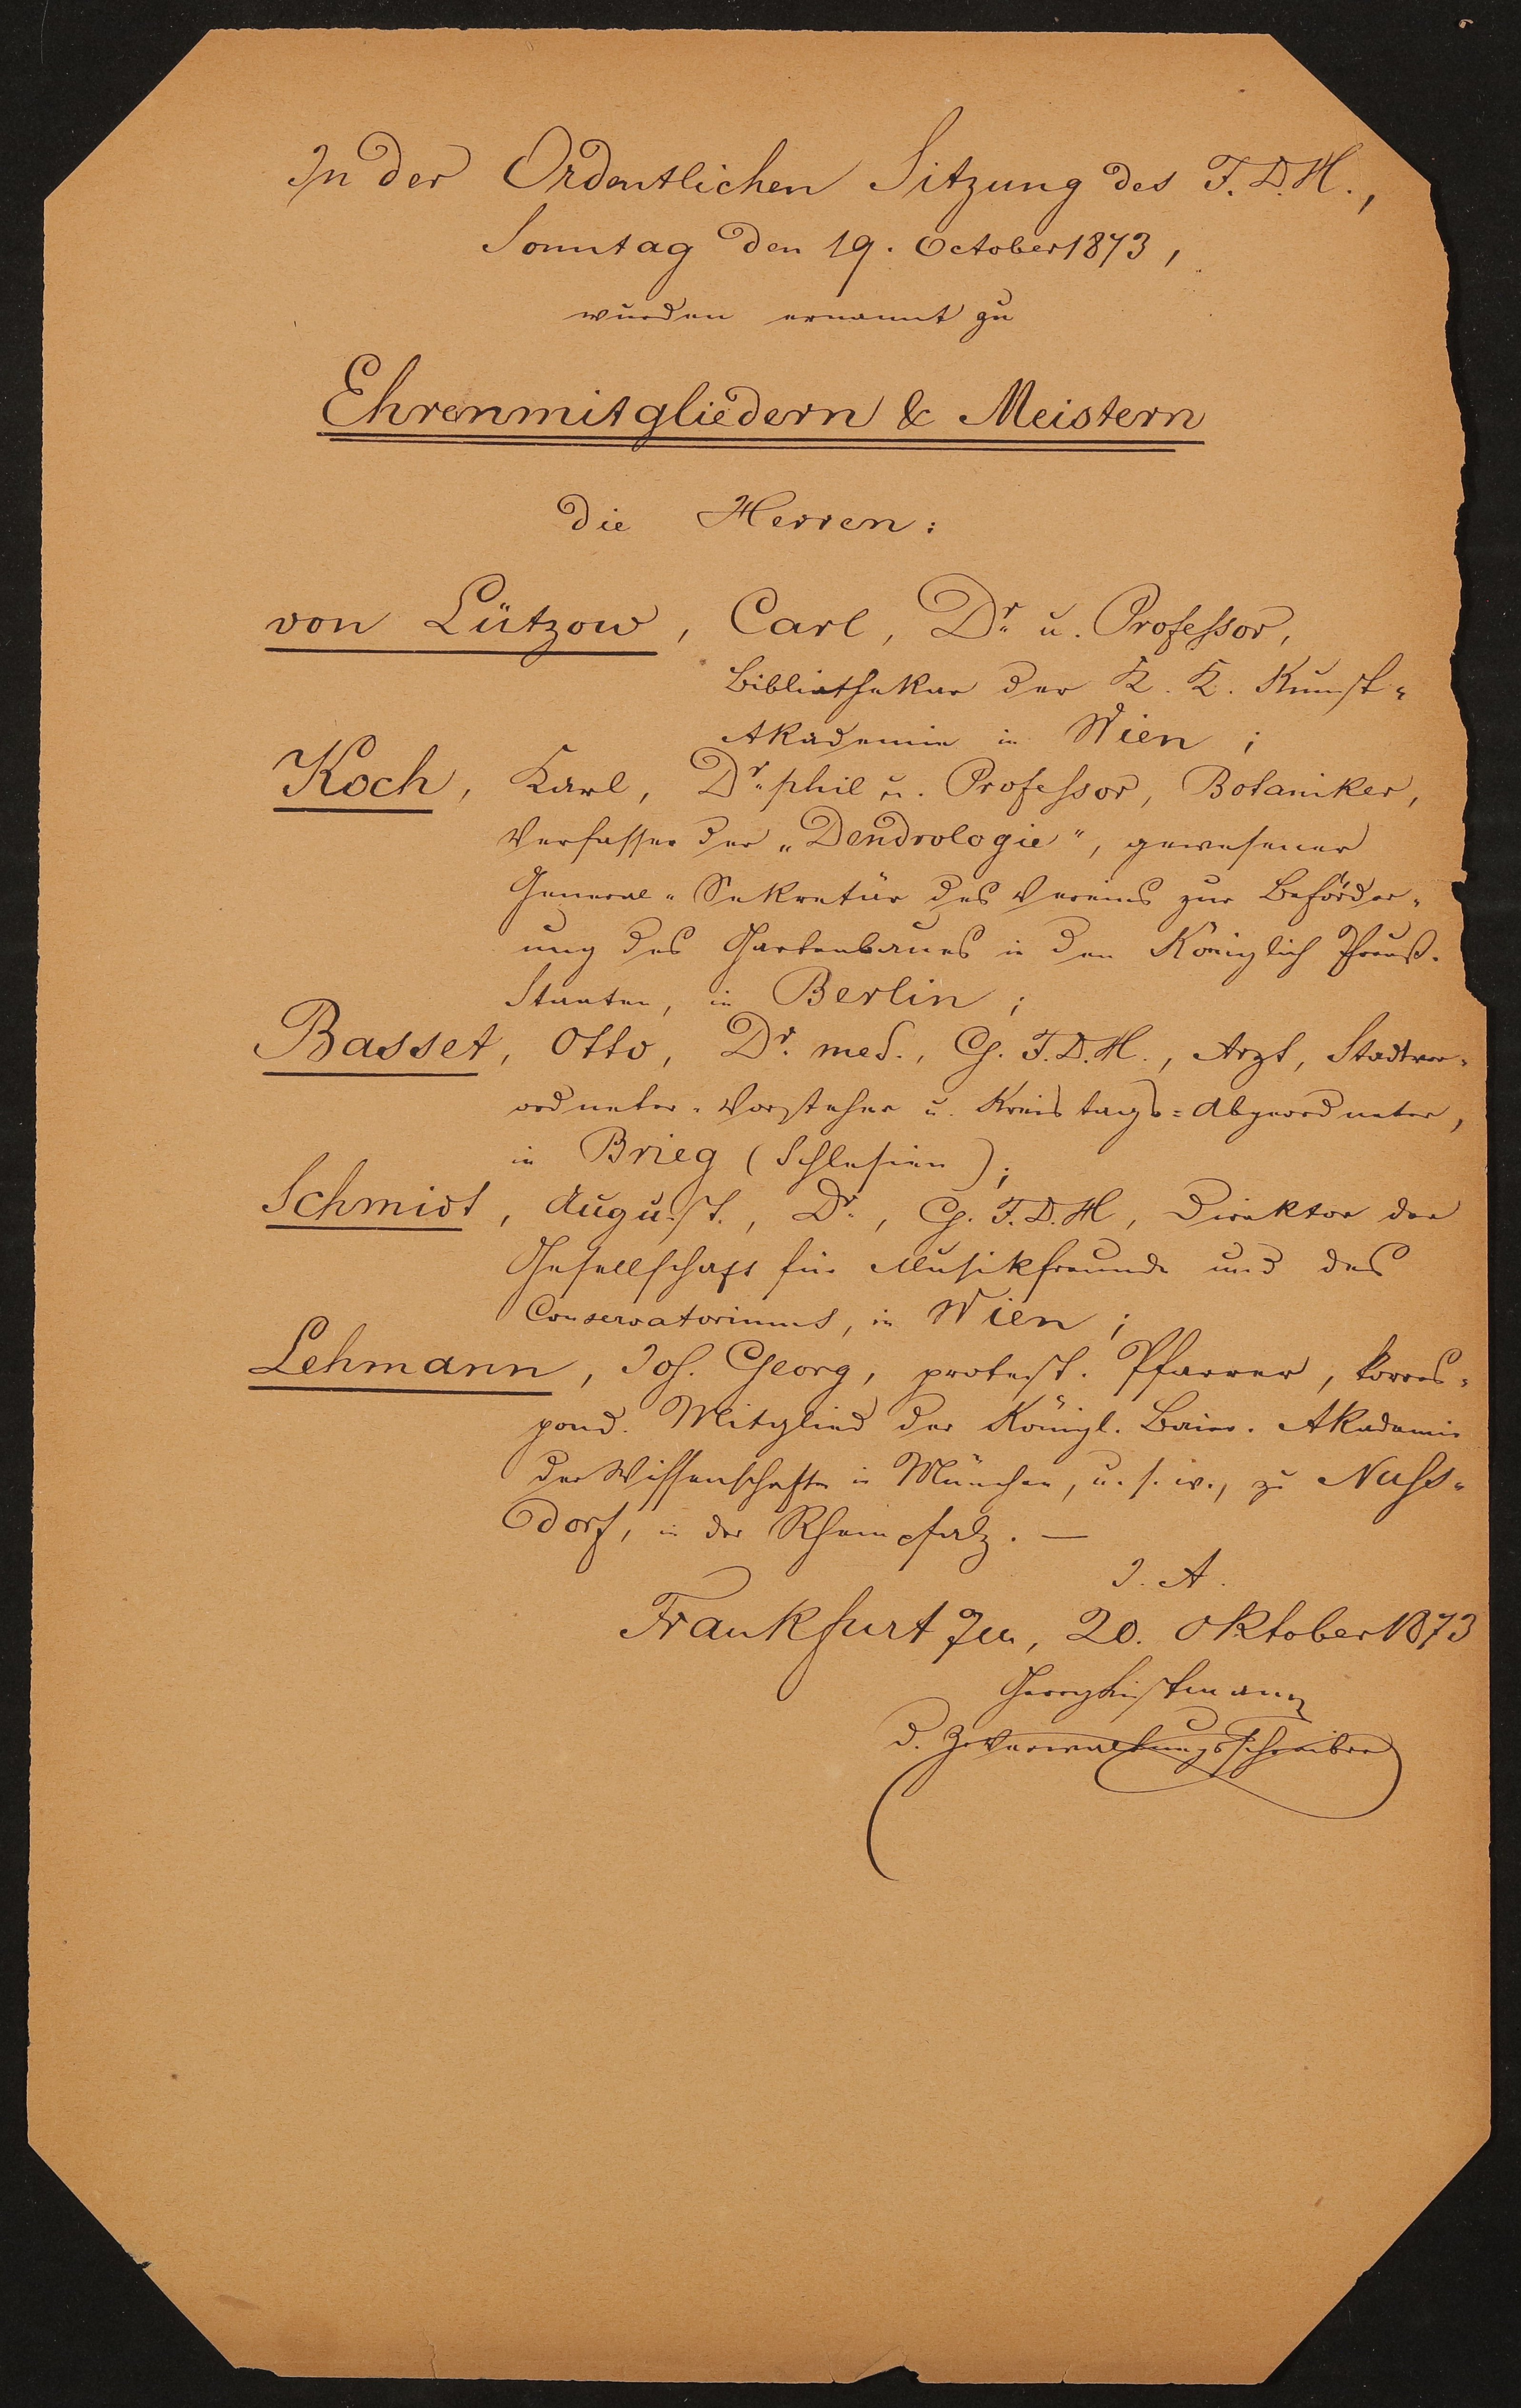 Liste "In der Ordentlichen Sitzung des F.D.H., Sonntag den 19. Oktober 1873, wurden ernannt zu Ehrenmitgliedern & Meistern..." (Freies Deutsches Hochstift / Frankfurter Goethe-Museum Public Domain Mark)